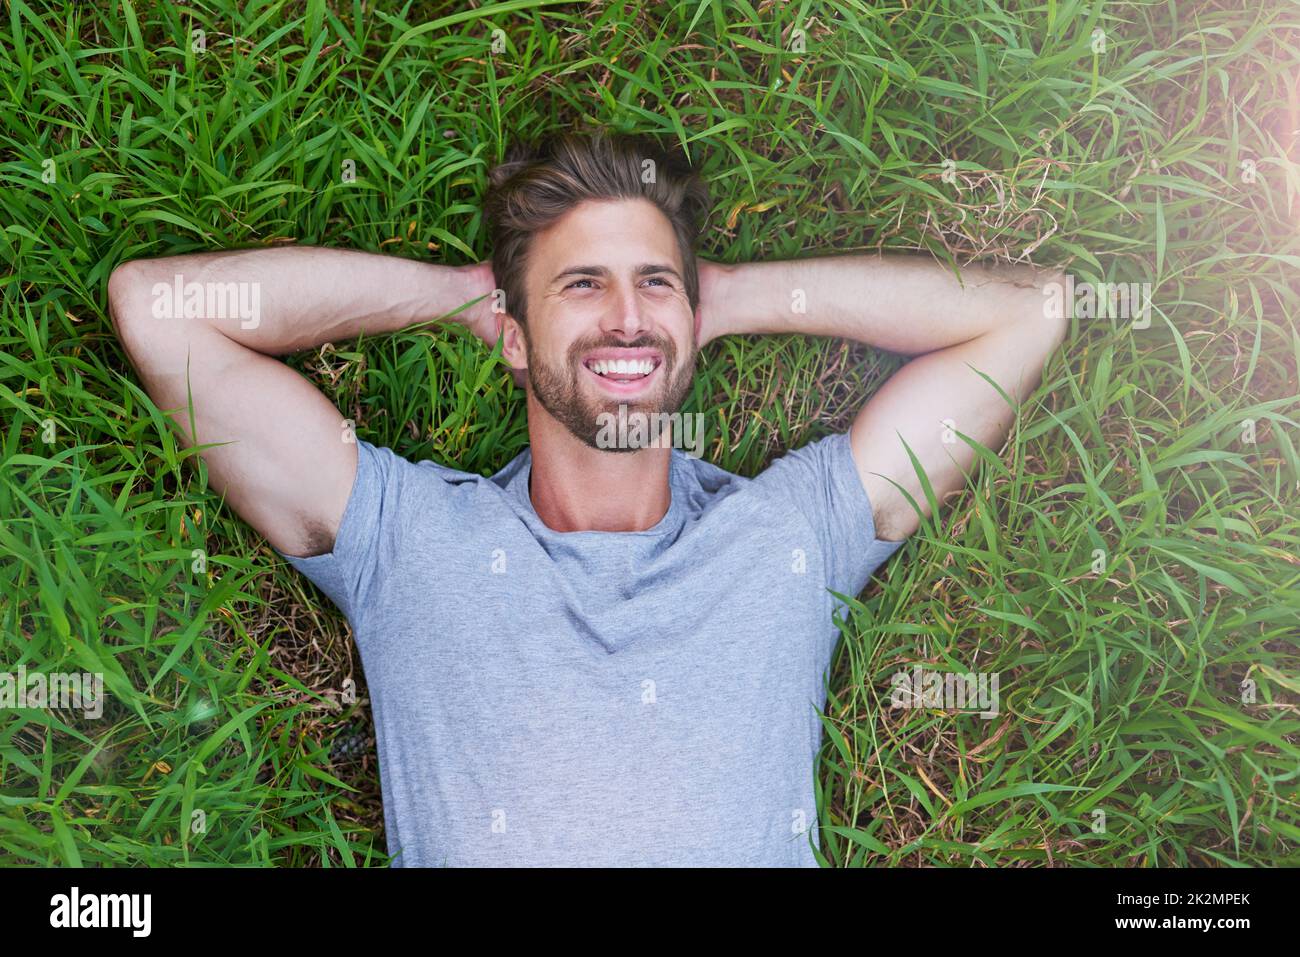 Auf der anderen Seite ist das Gras grüner. Hochwinkelige Aufnahme eines jungen Mannes, der auf dem Gras mit den Händen hinter dem Kopf liegt. Stockfoto